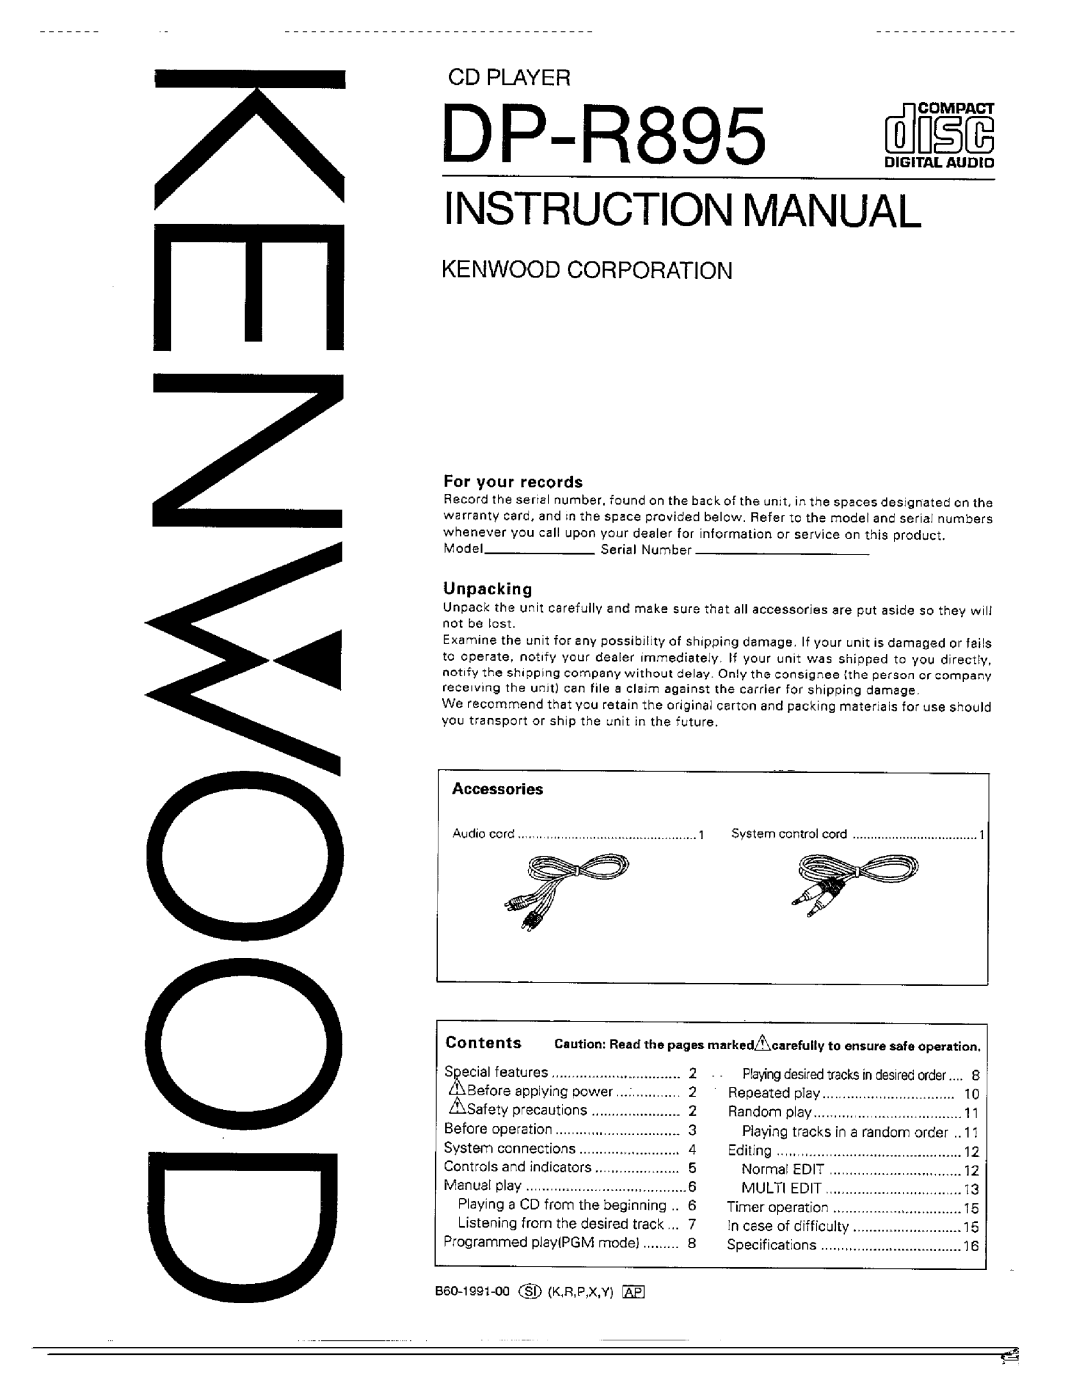 Kenwood DP-R895 manual 